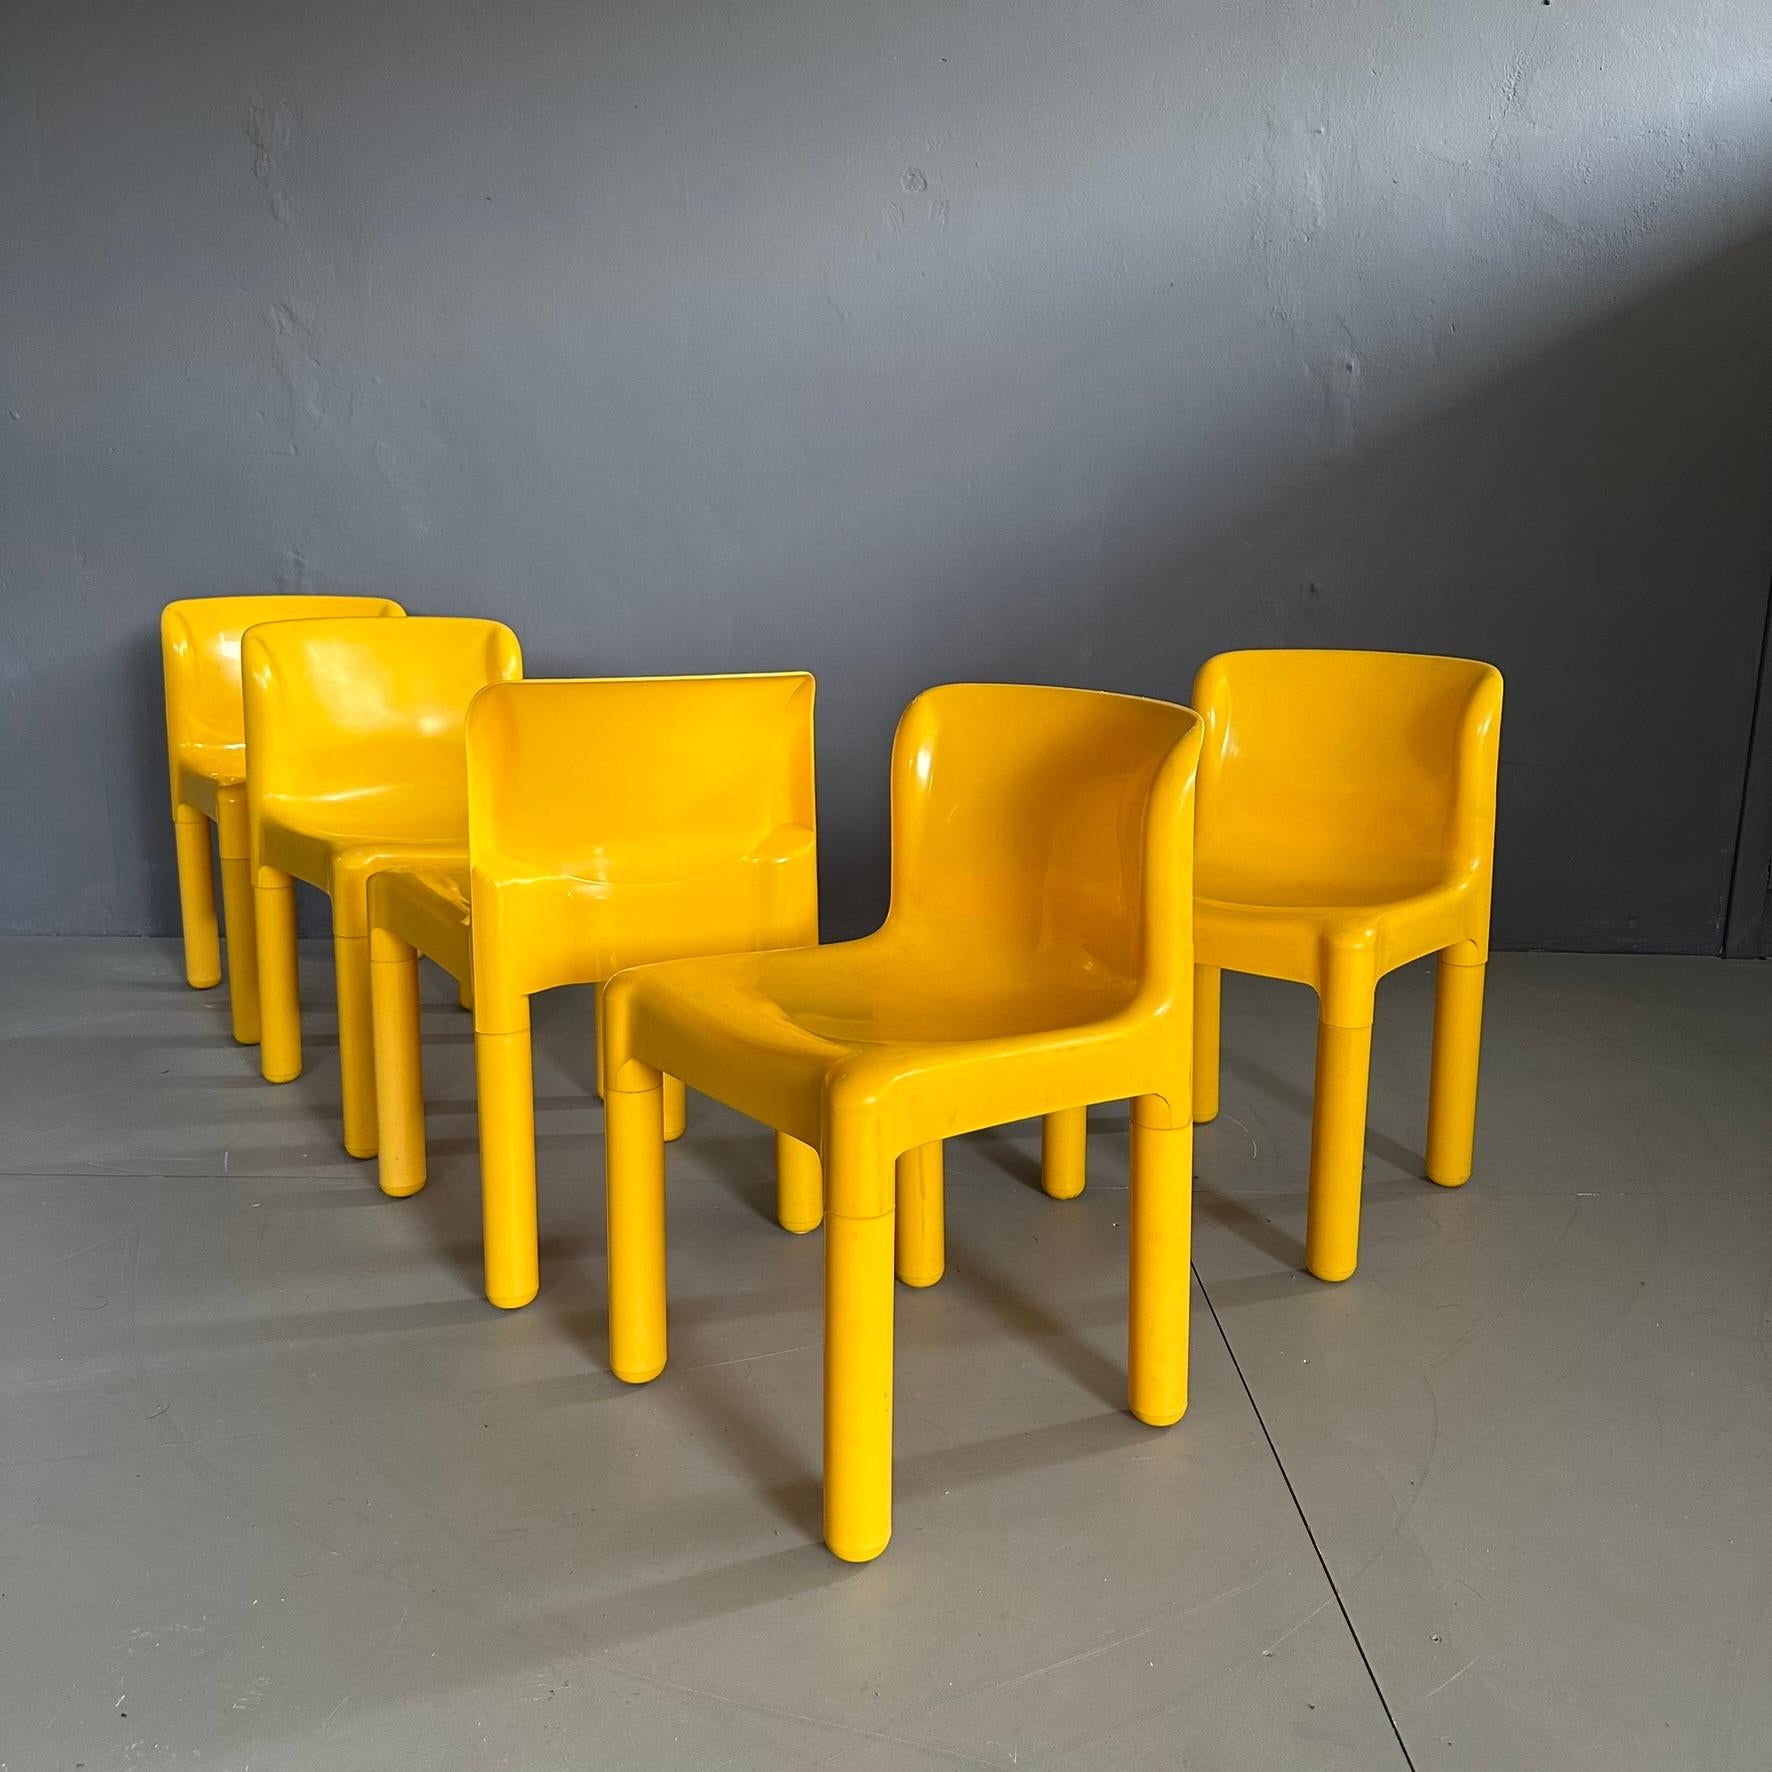 Ensemble de cinq chaises mod. 4875 conçu par Carlo Bartoli pour Kartell dans les années soixante-dix.
Chaises en plastique jaune vif.
Les pieds sont amovibles.
La marque d'authenticité est imprimée sous le siège...

